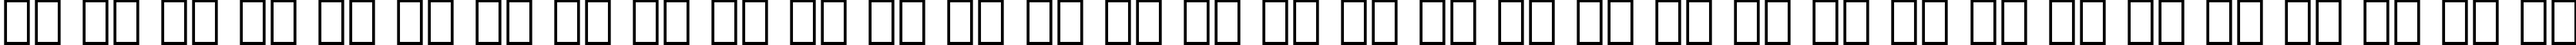 Пример написания русского алфавита шрифтом Bitstream Arrus Black BT